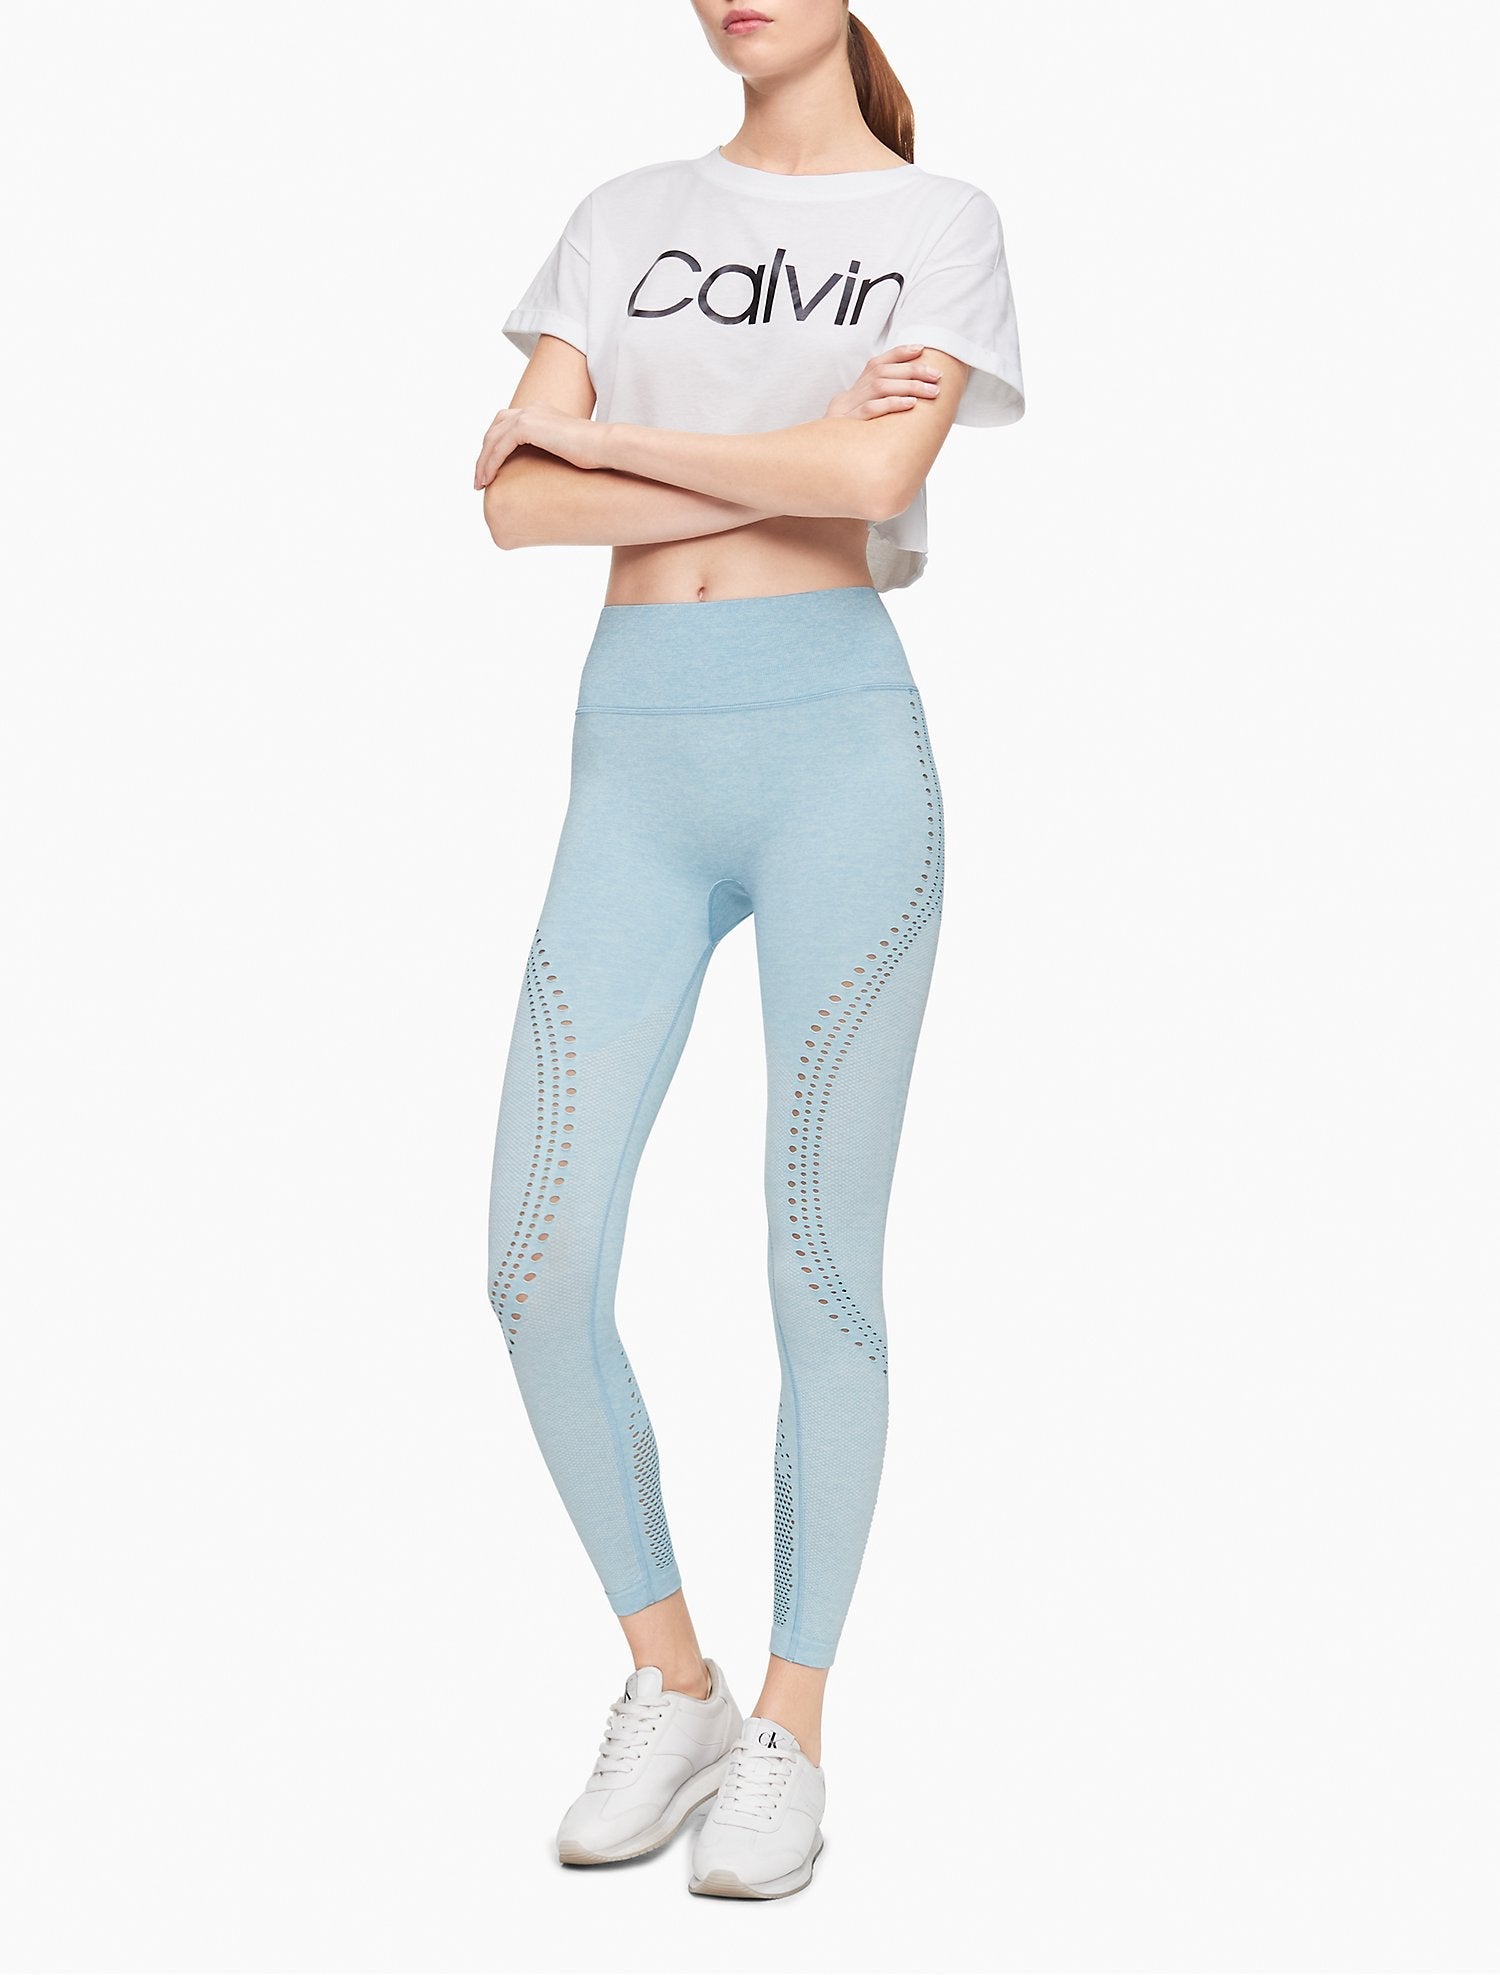 Calvin Klein Performance Tri-Blend Jumbo Logo 7/8 Leggings - Women